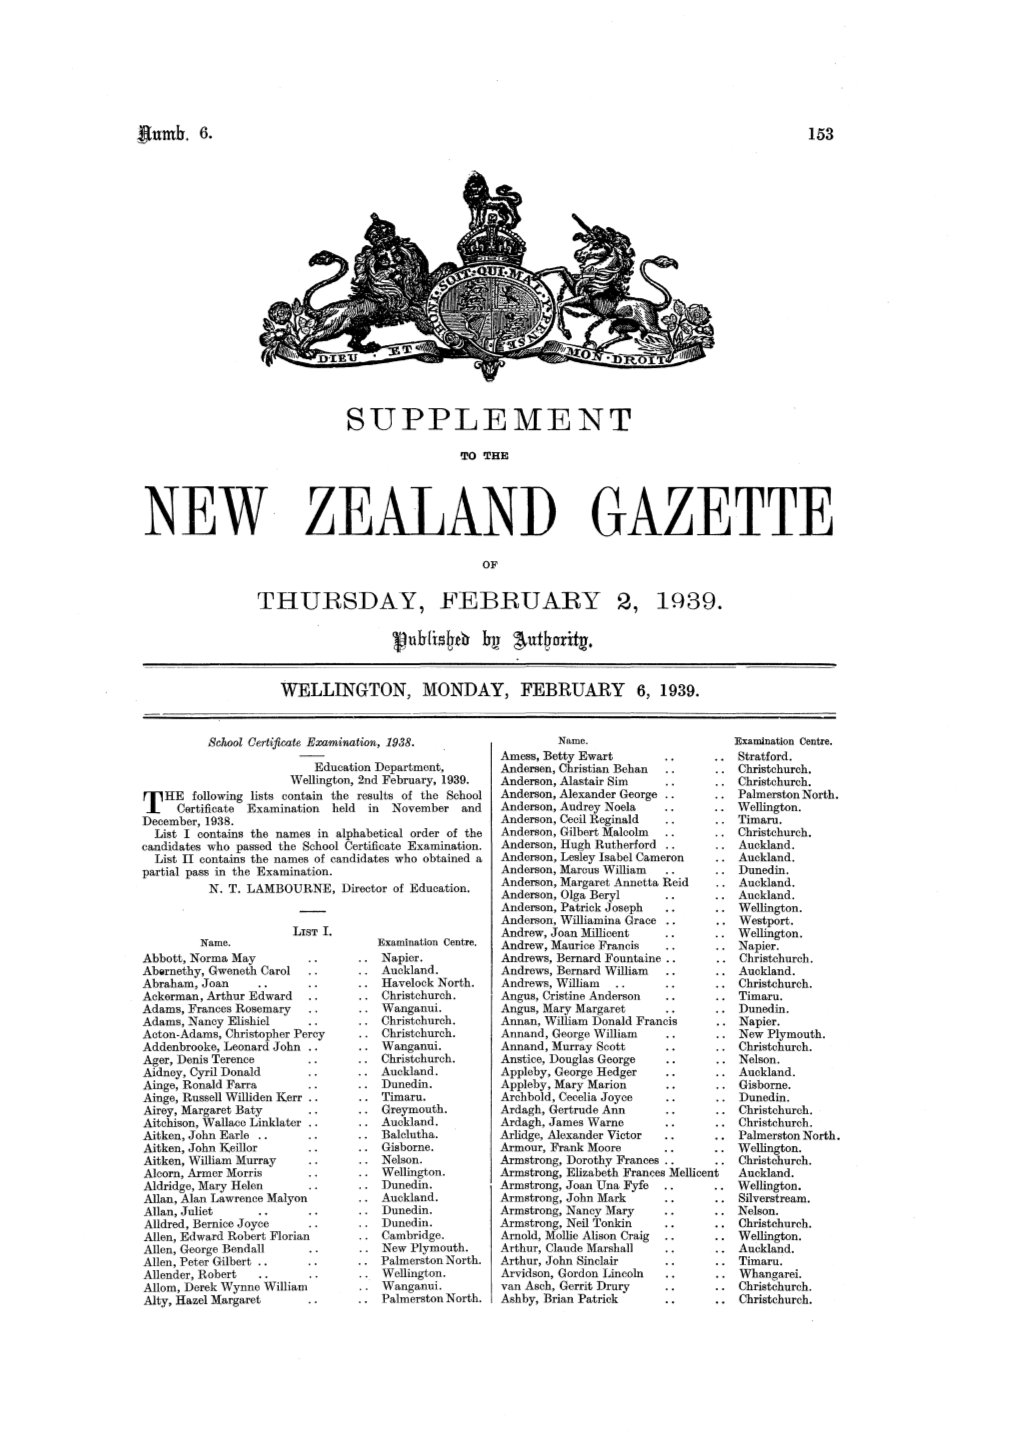 NEW ZEALAND GAZETTE of THURSDAY, FEBRUARY 2, In39